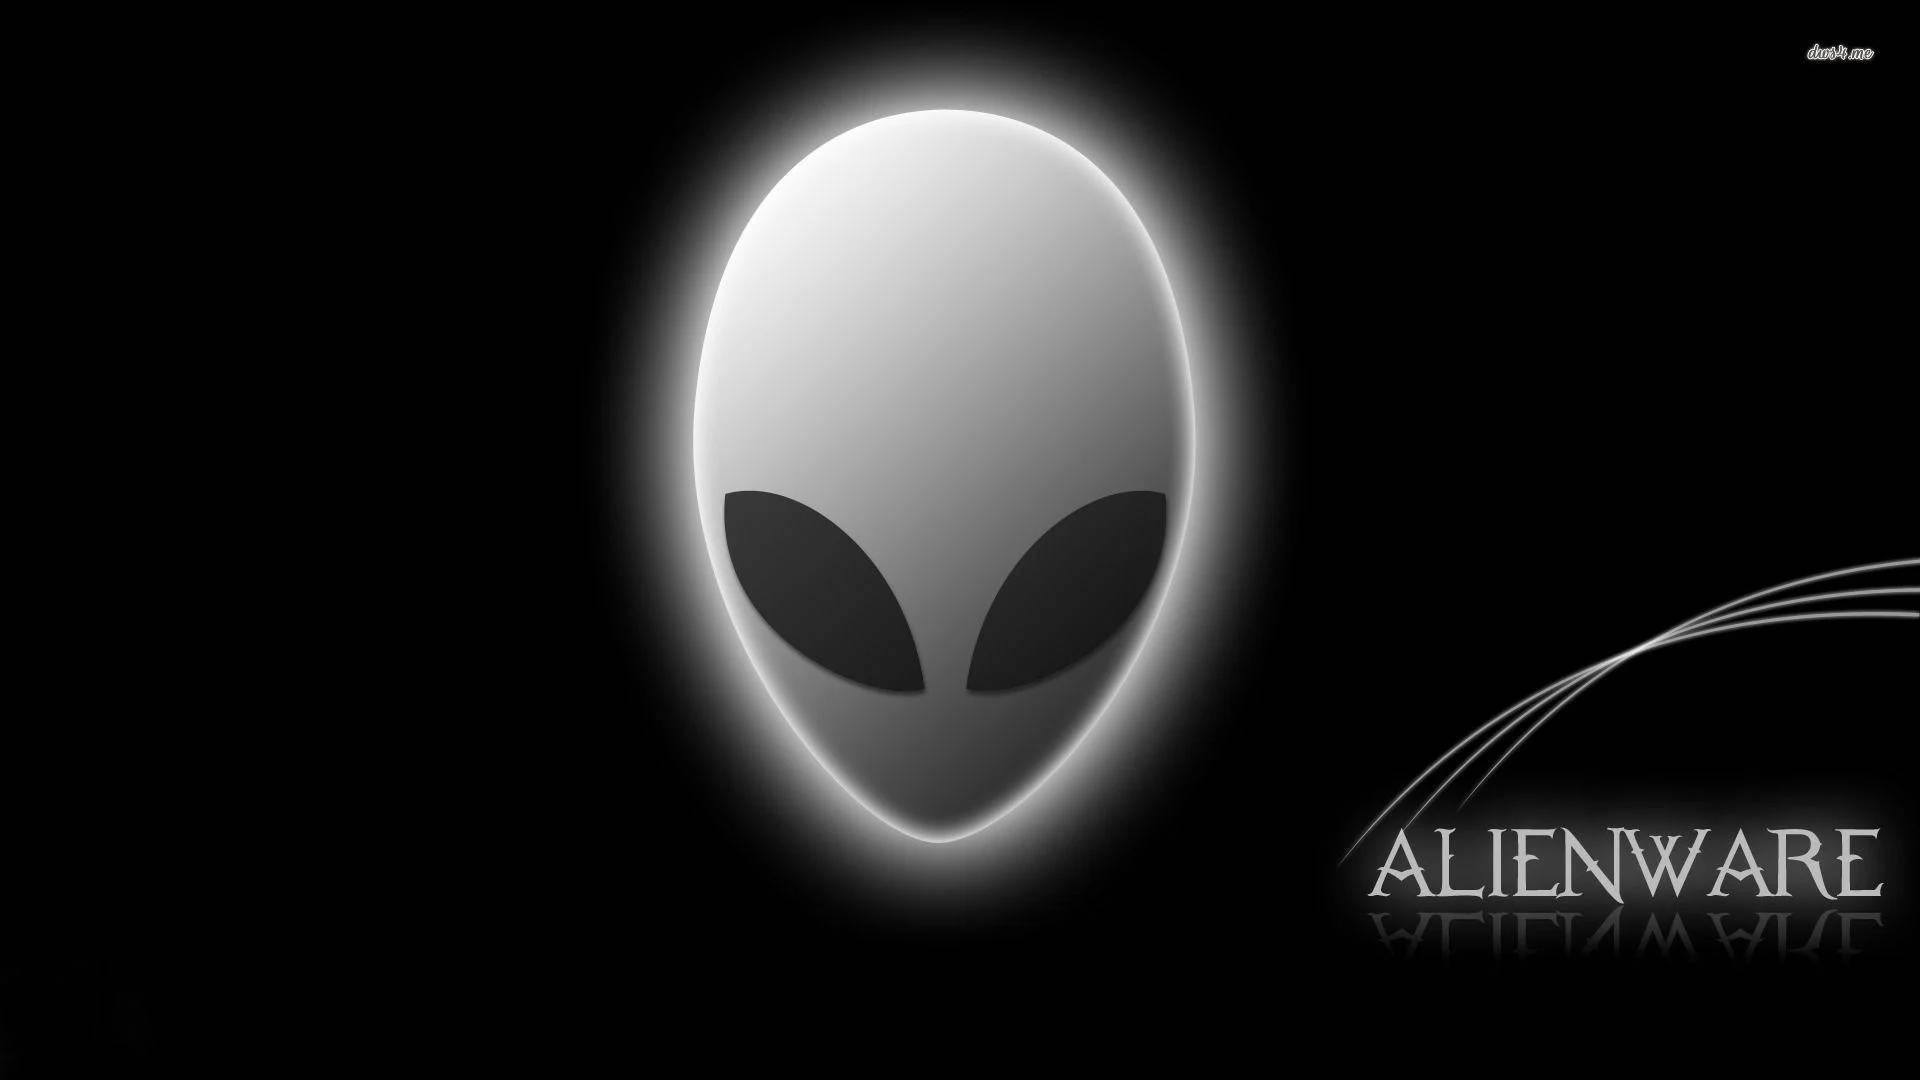 Sort Og Hvidt Alienware-logo Wallpaper